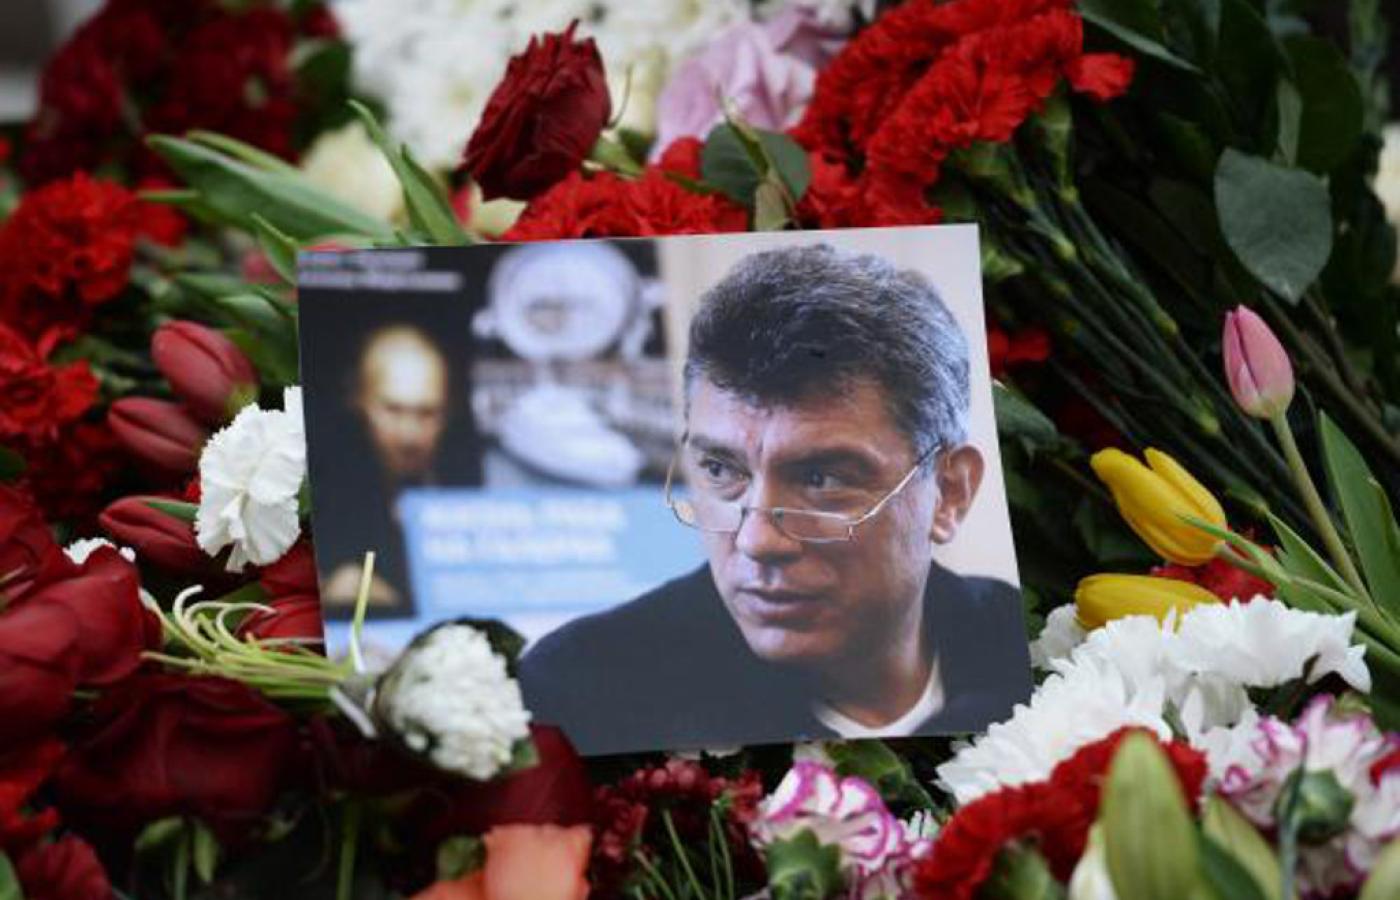 Tysiące mieszkańców Moskwy złożyło kwiaty na moście, na którym zamordowano polityka.